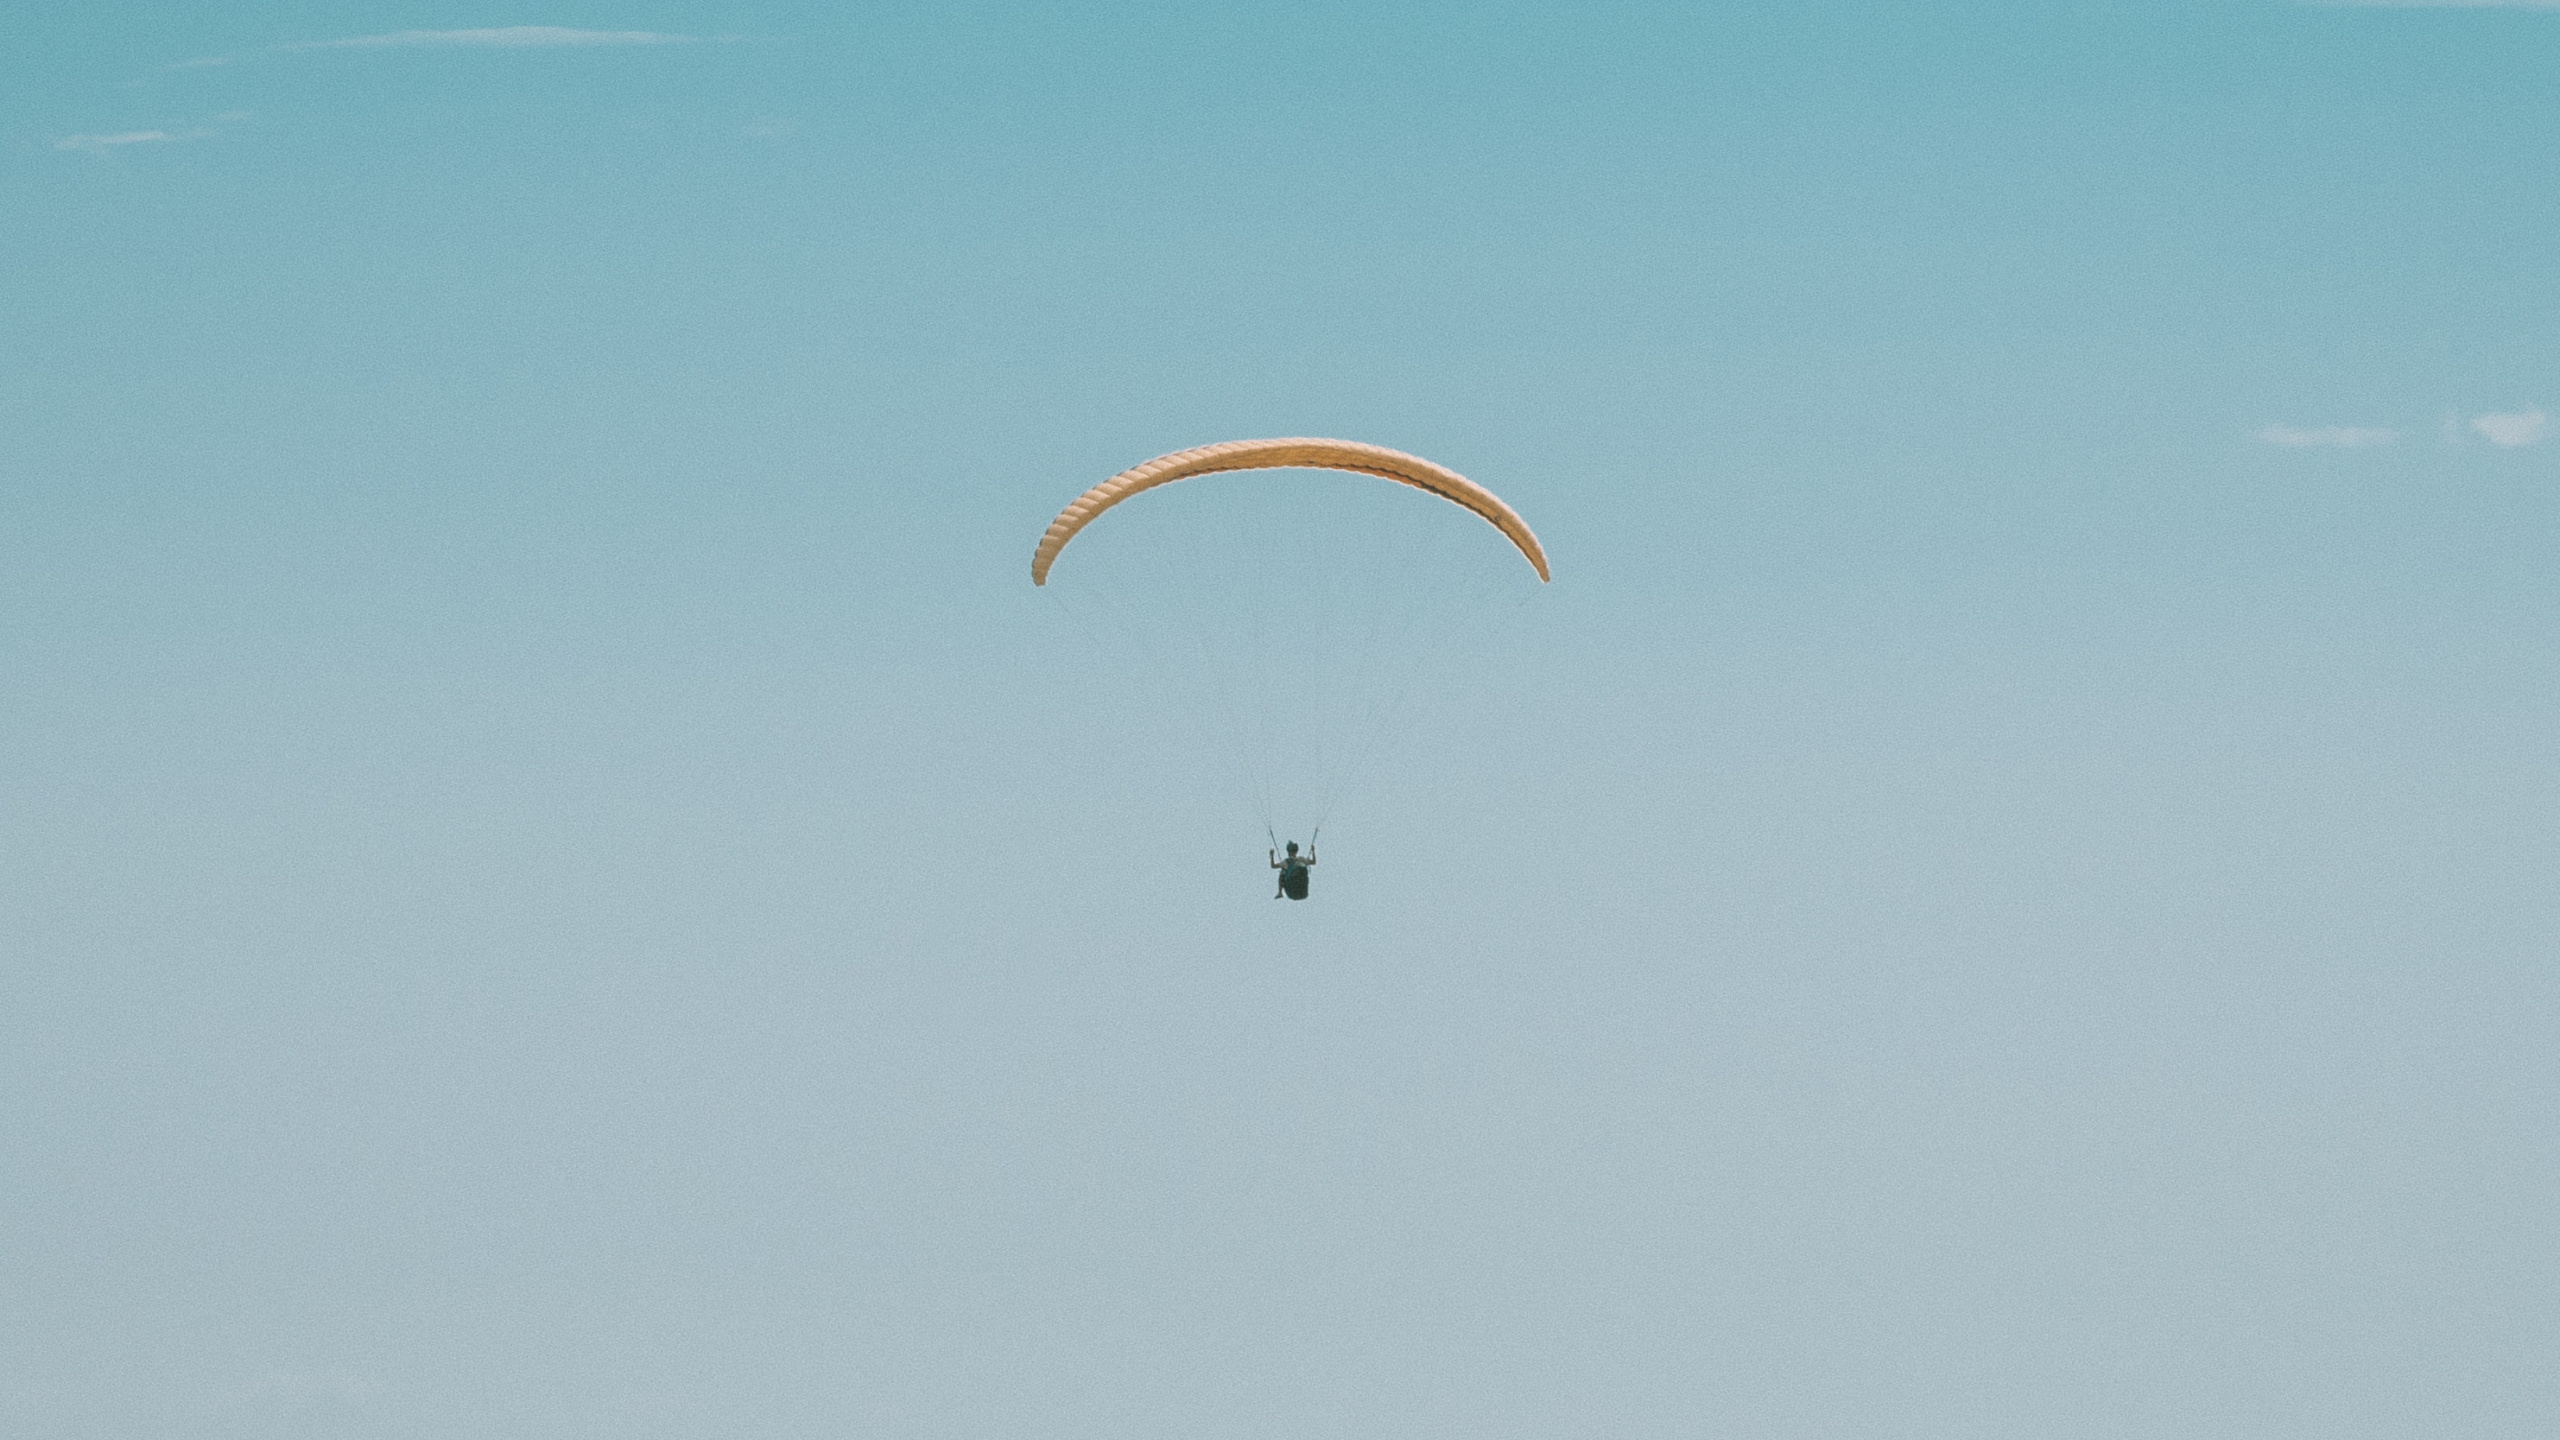 降落伞, 极限运动, 空中运动, Windsports, 伞兵 壁纸 2560x1440 允许